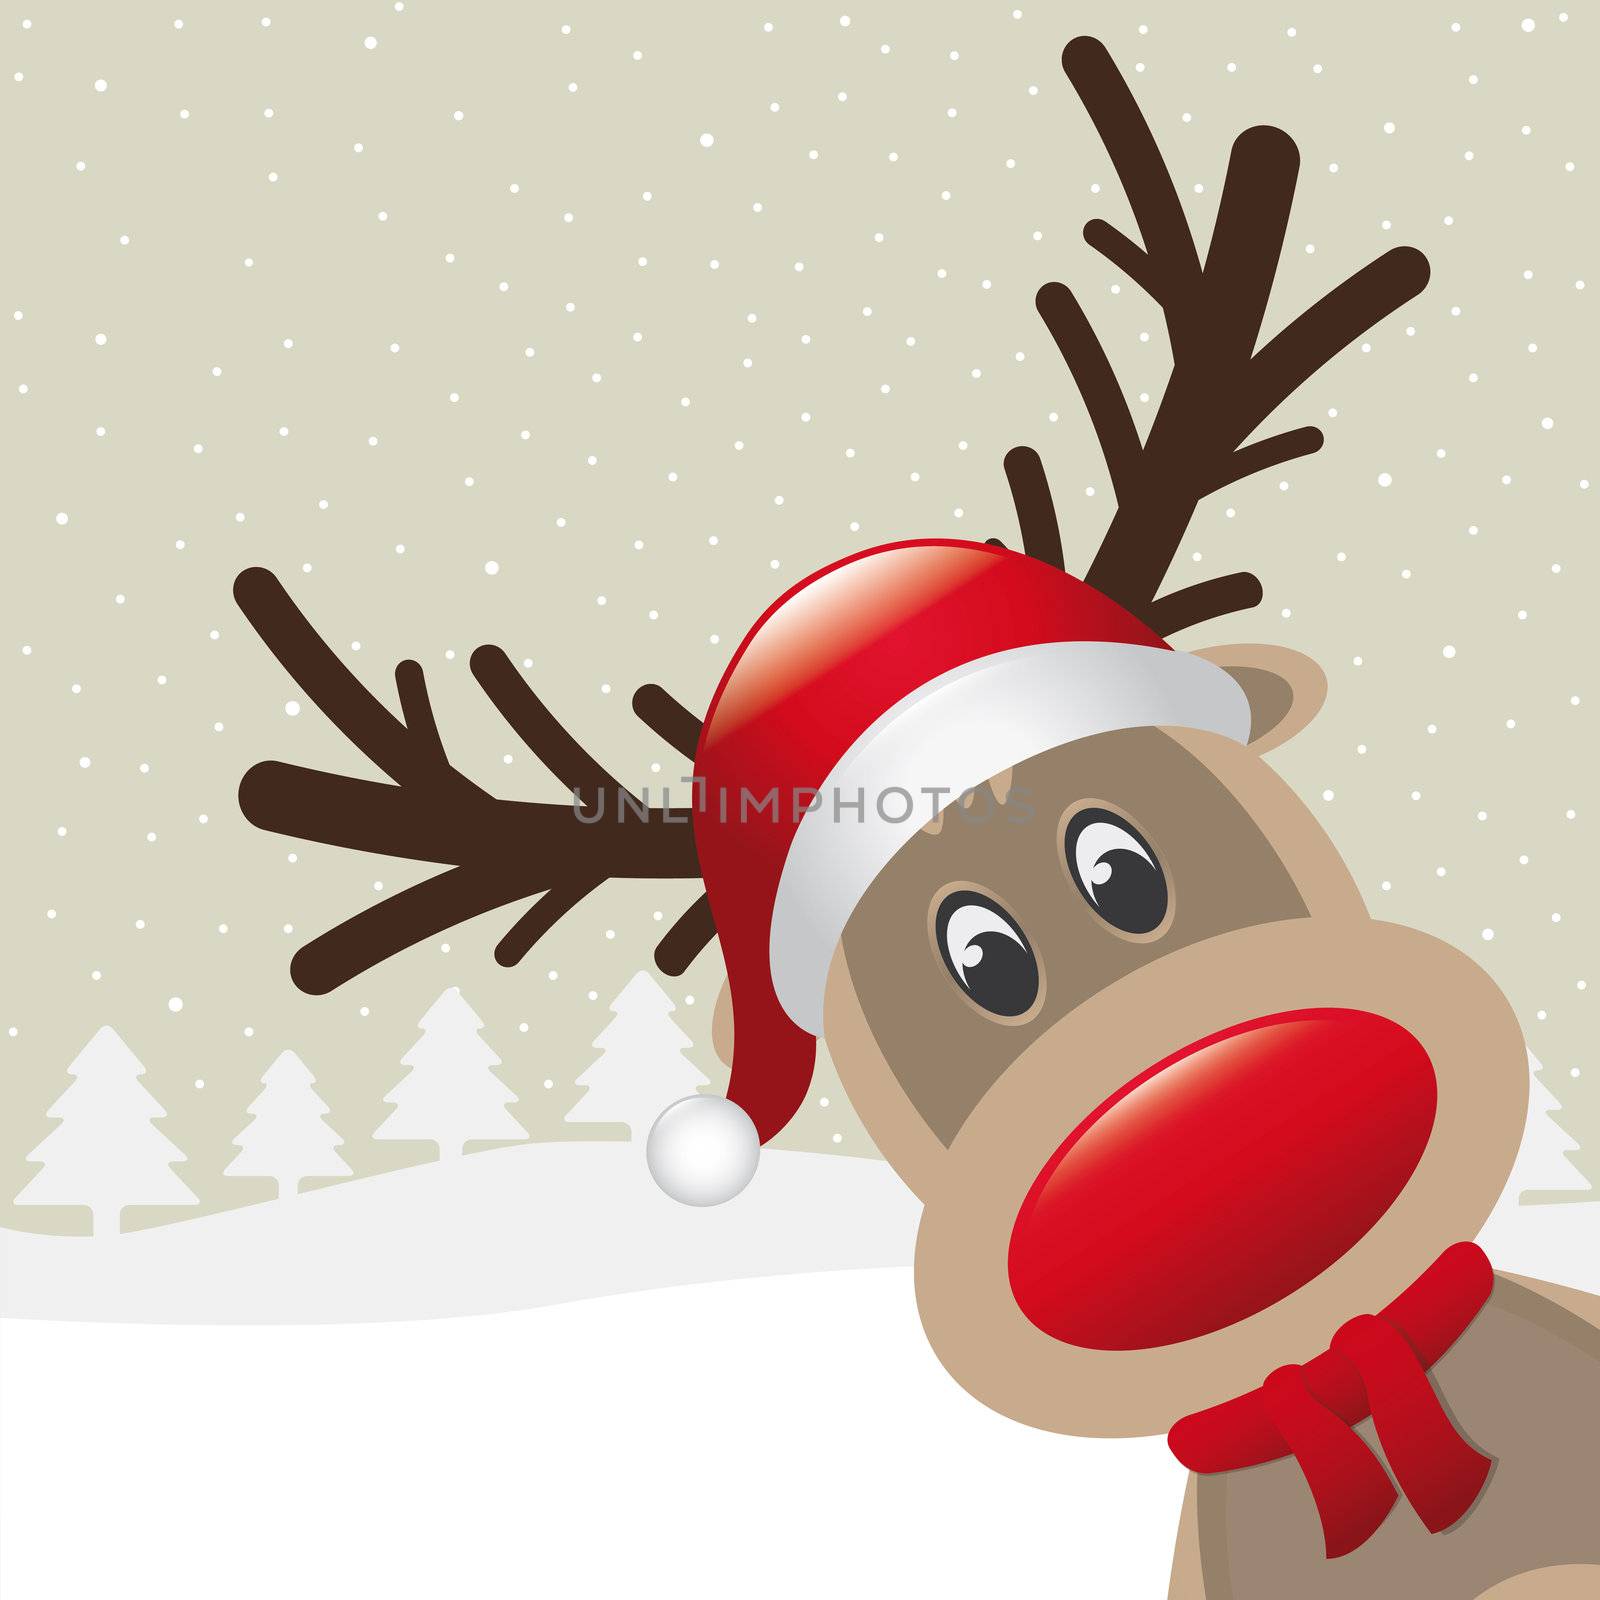 reindeer red nose scarf hat by dariusL